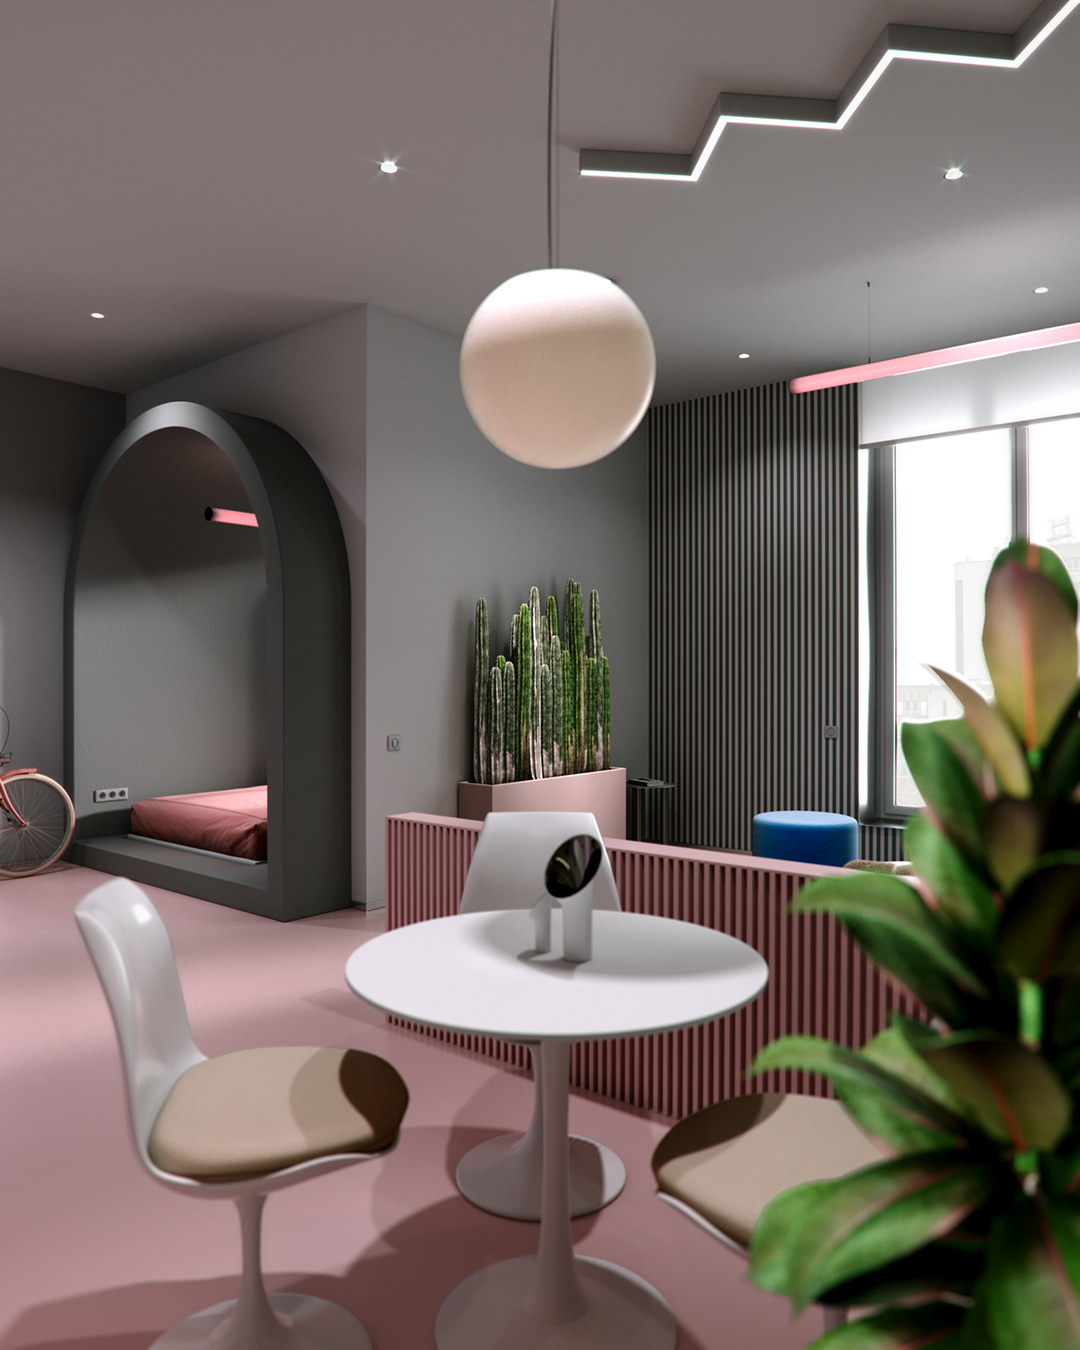 3D 3dsmax apartment apartmentdesign coronarenderer design Interior interiordesign smallspace